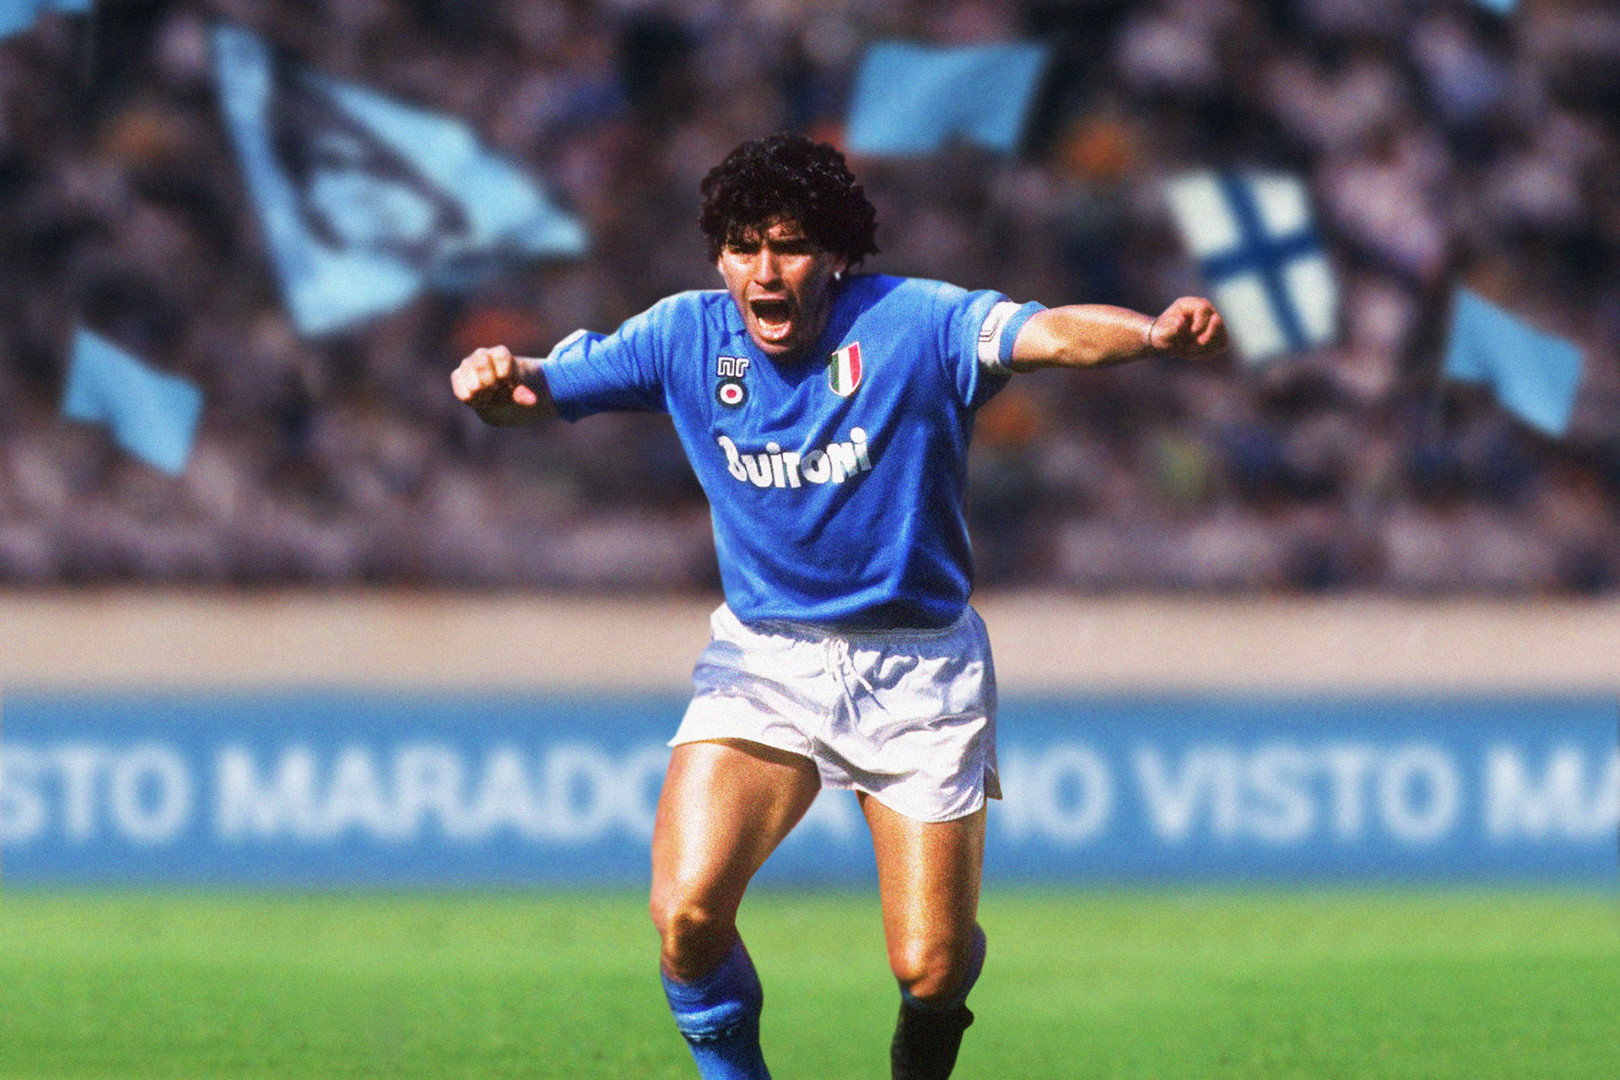 Addio a Diego Armando Maradona, il Dio del calcio